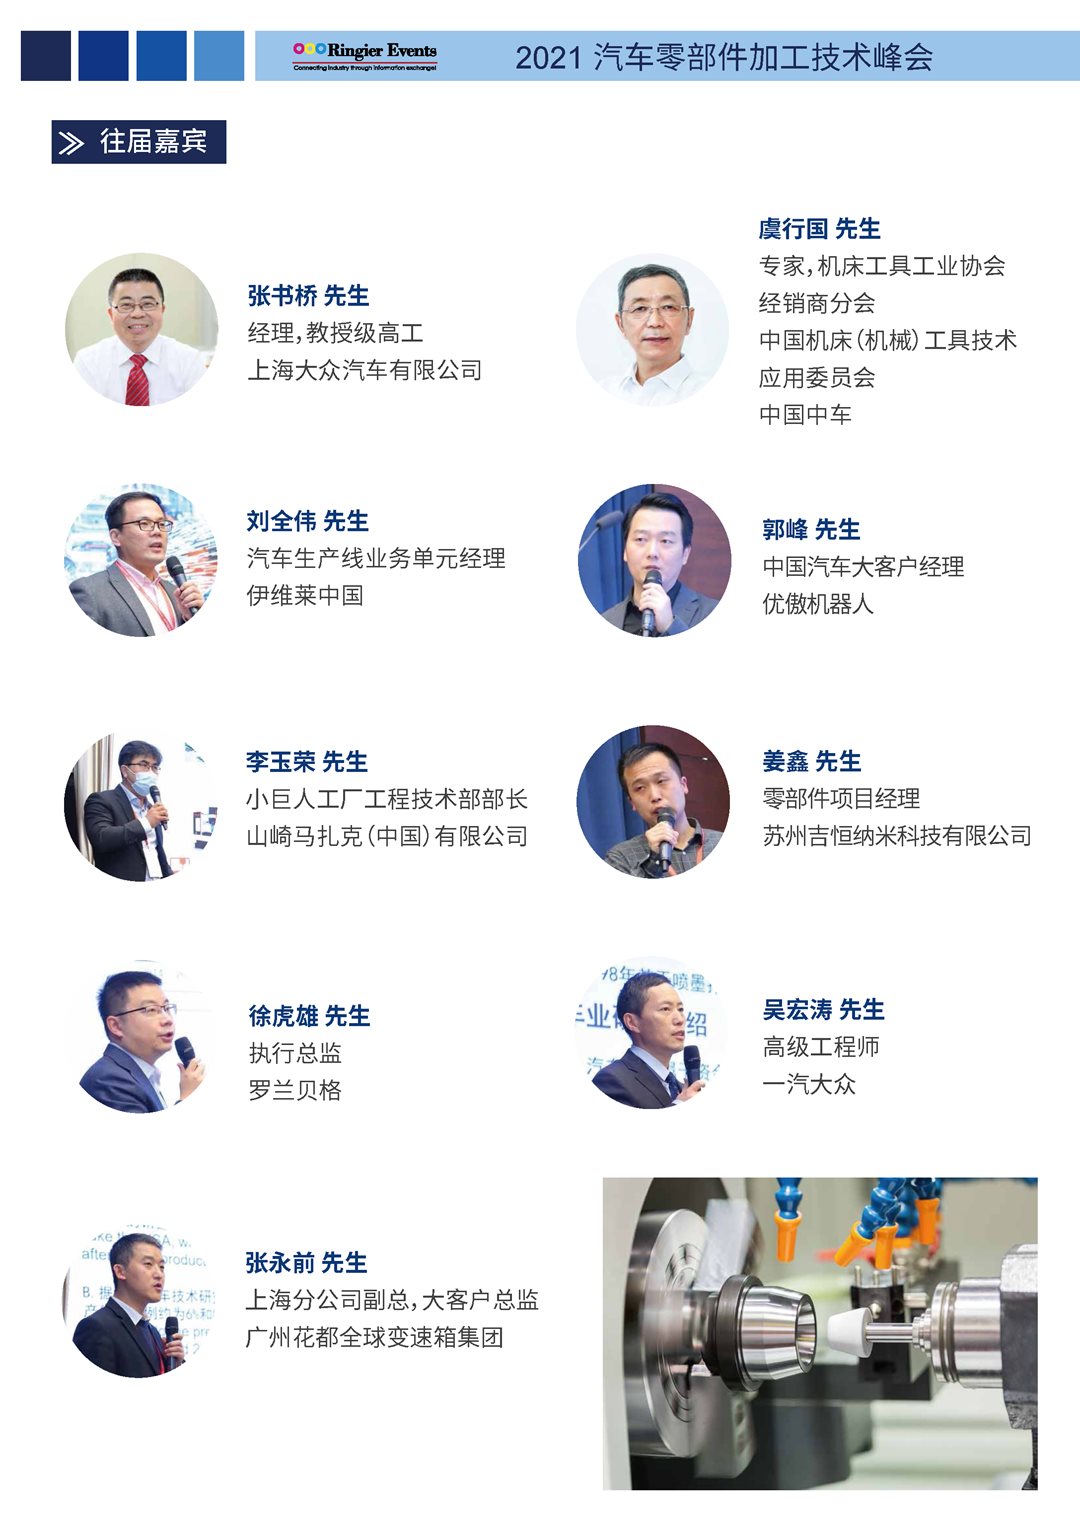 2021汽车零部件加工技术峰会-中文资料_页面_4.png